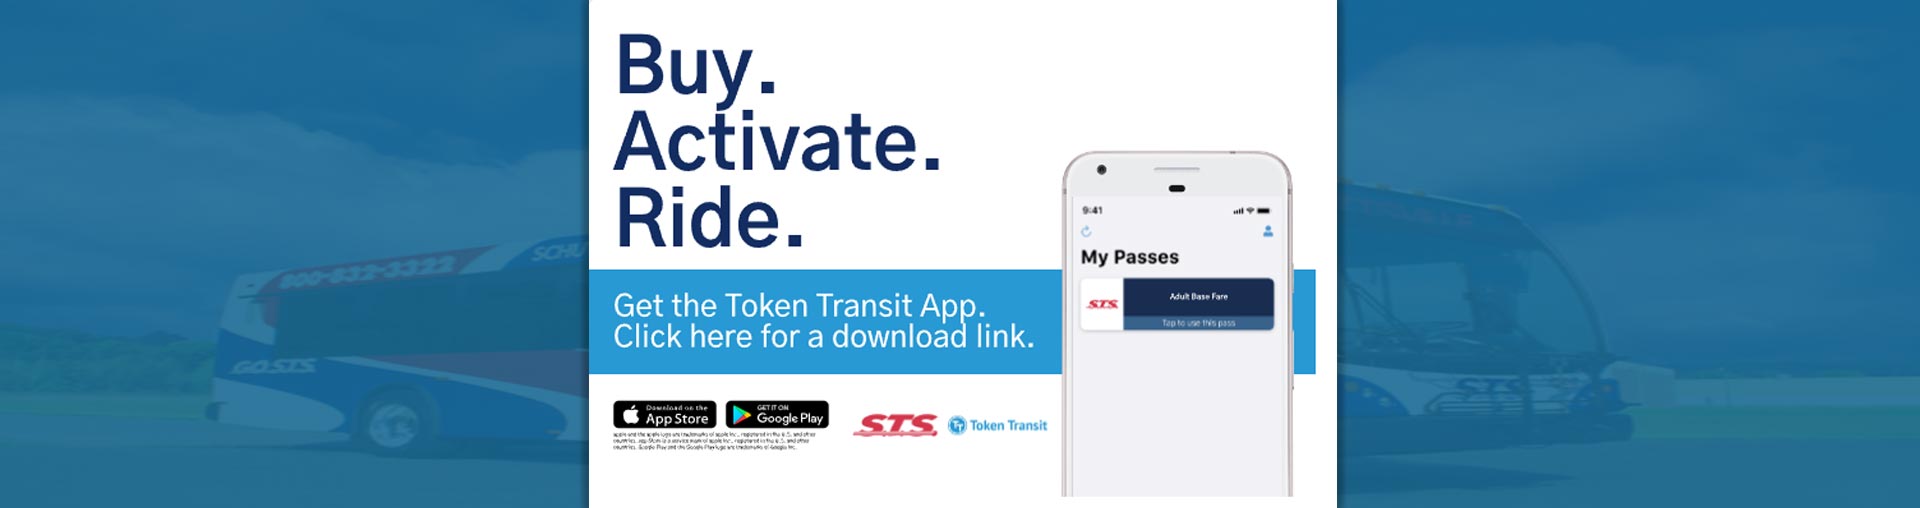 Get the Token Transit App